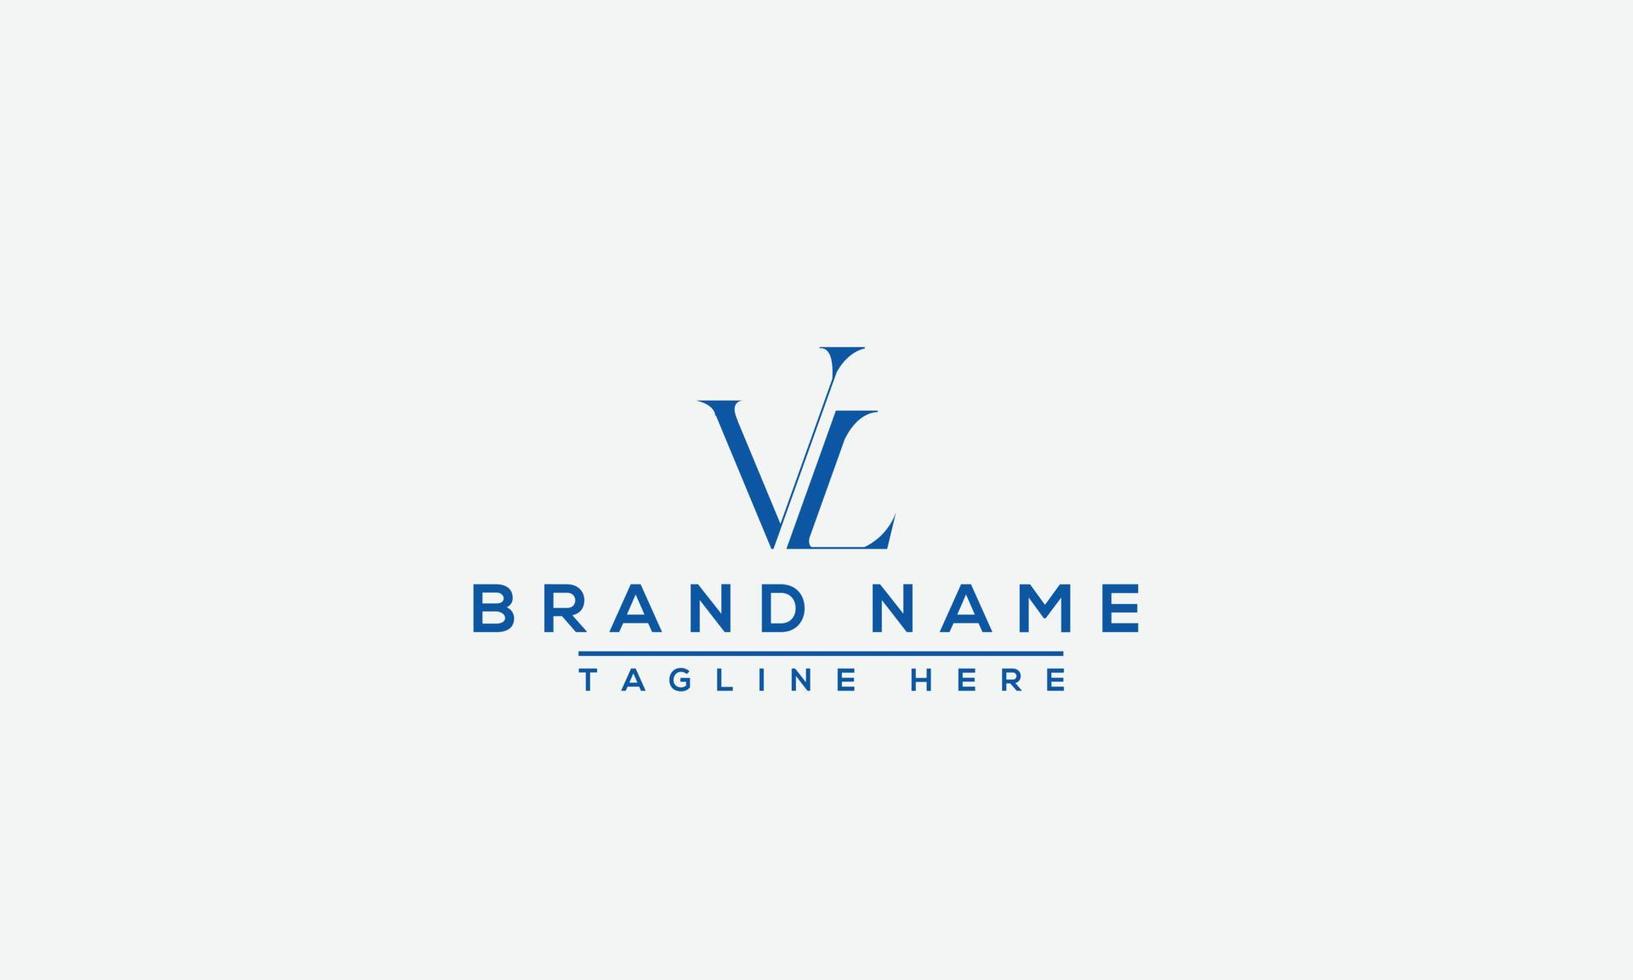 elemento de marca gráfico vectorial de plantilla de diseño de logotipo vl vector